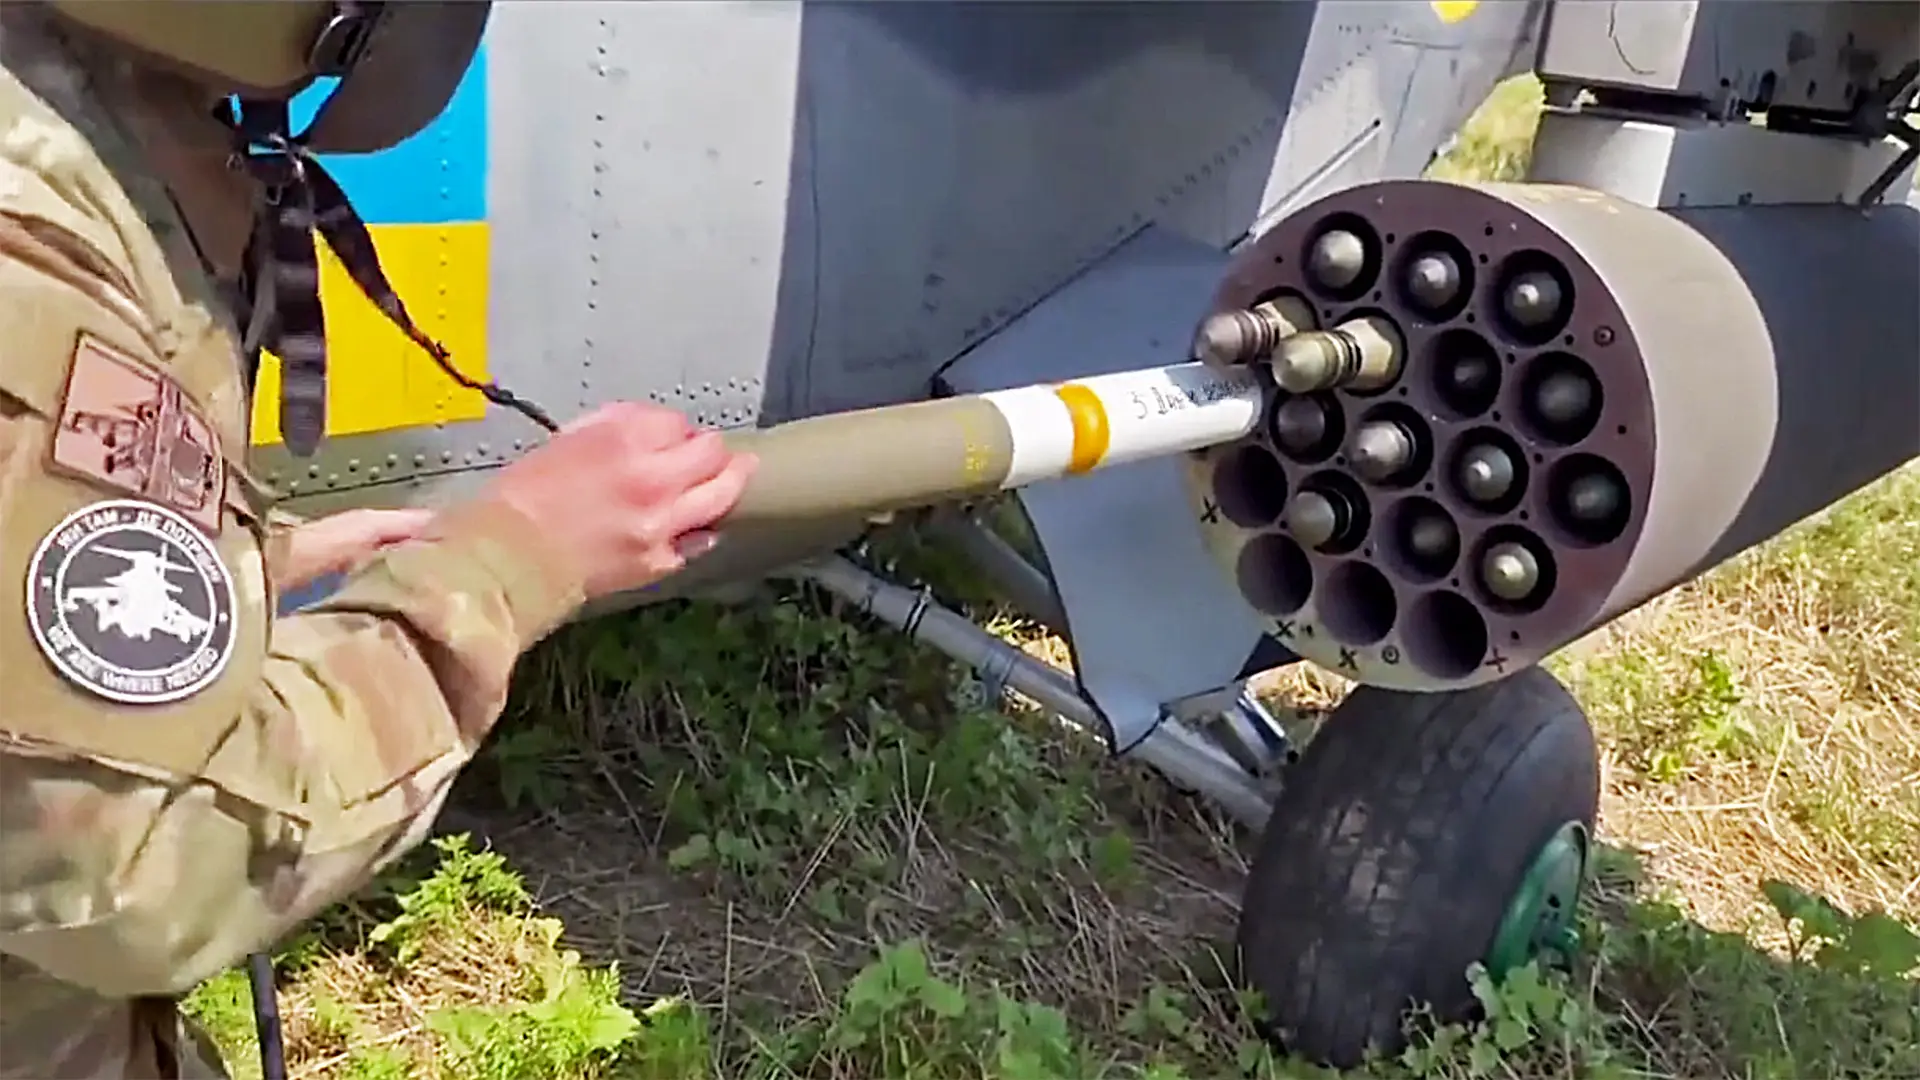 Ukraińskie Siły Zbrojne pokazały załadunek amerykańskich rakiet Hydra do wyrzutni M261 na śmigłowcu Mi-24V.